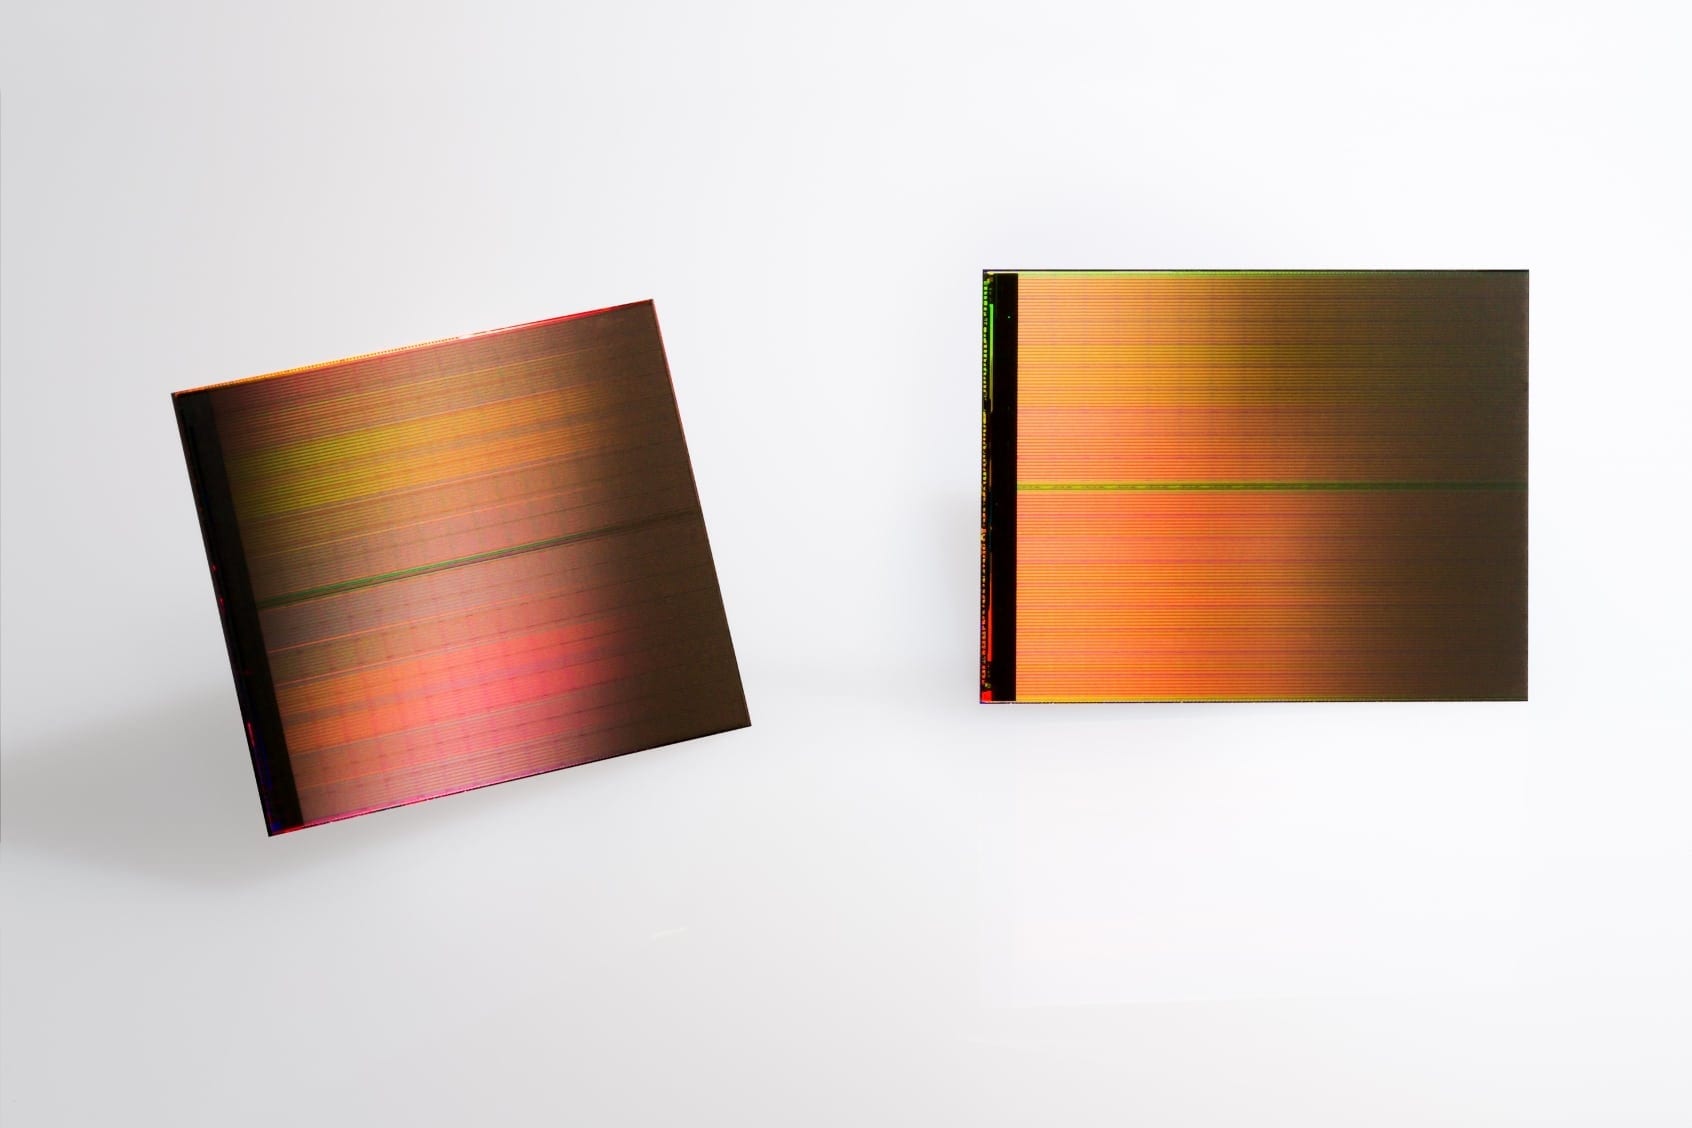 Intel și Micron prezintă cel mai nou tip de memorie